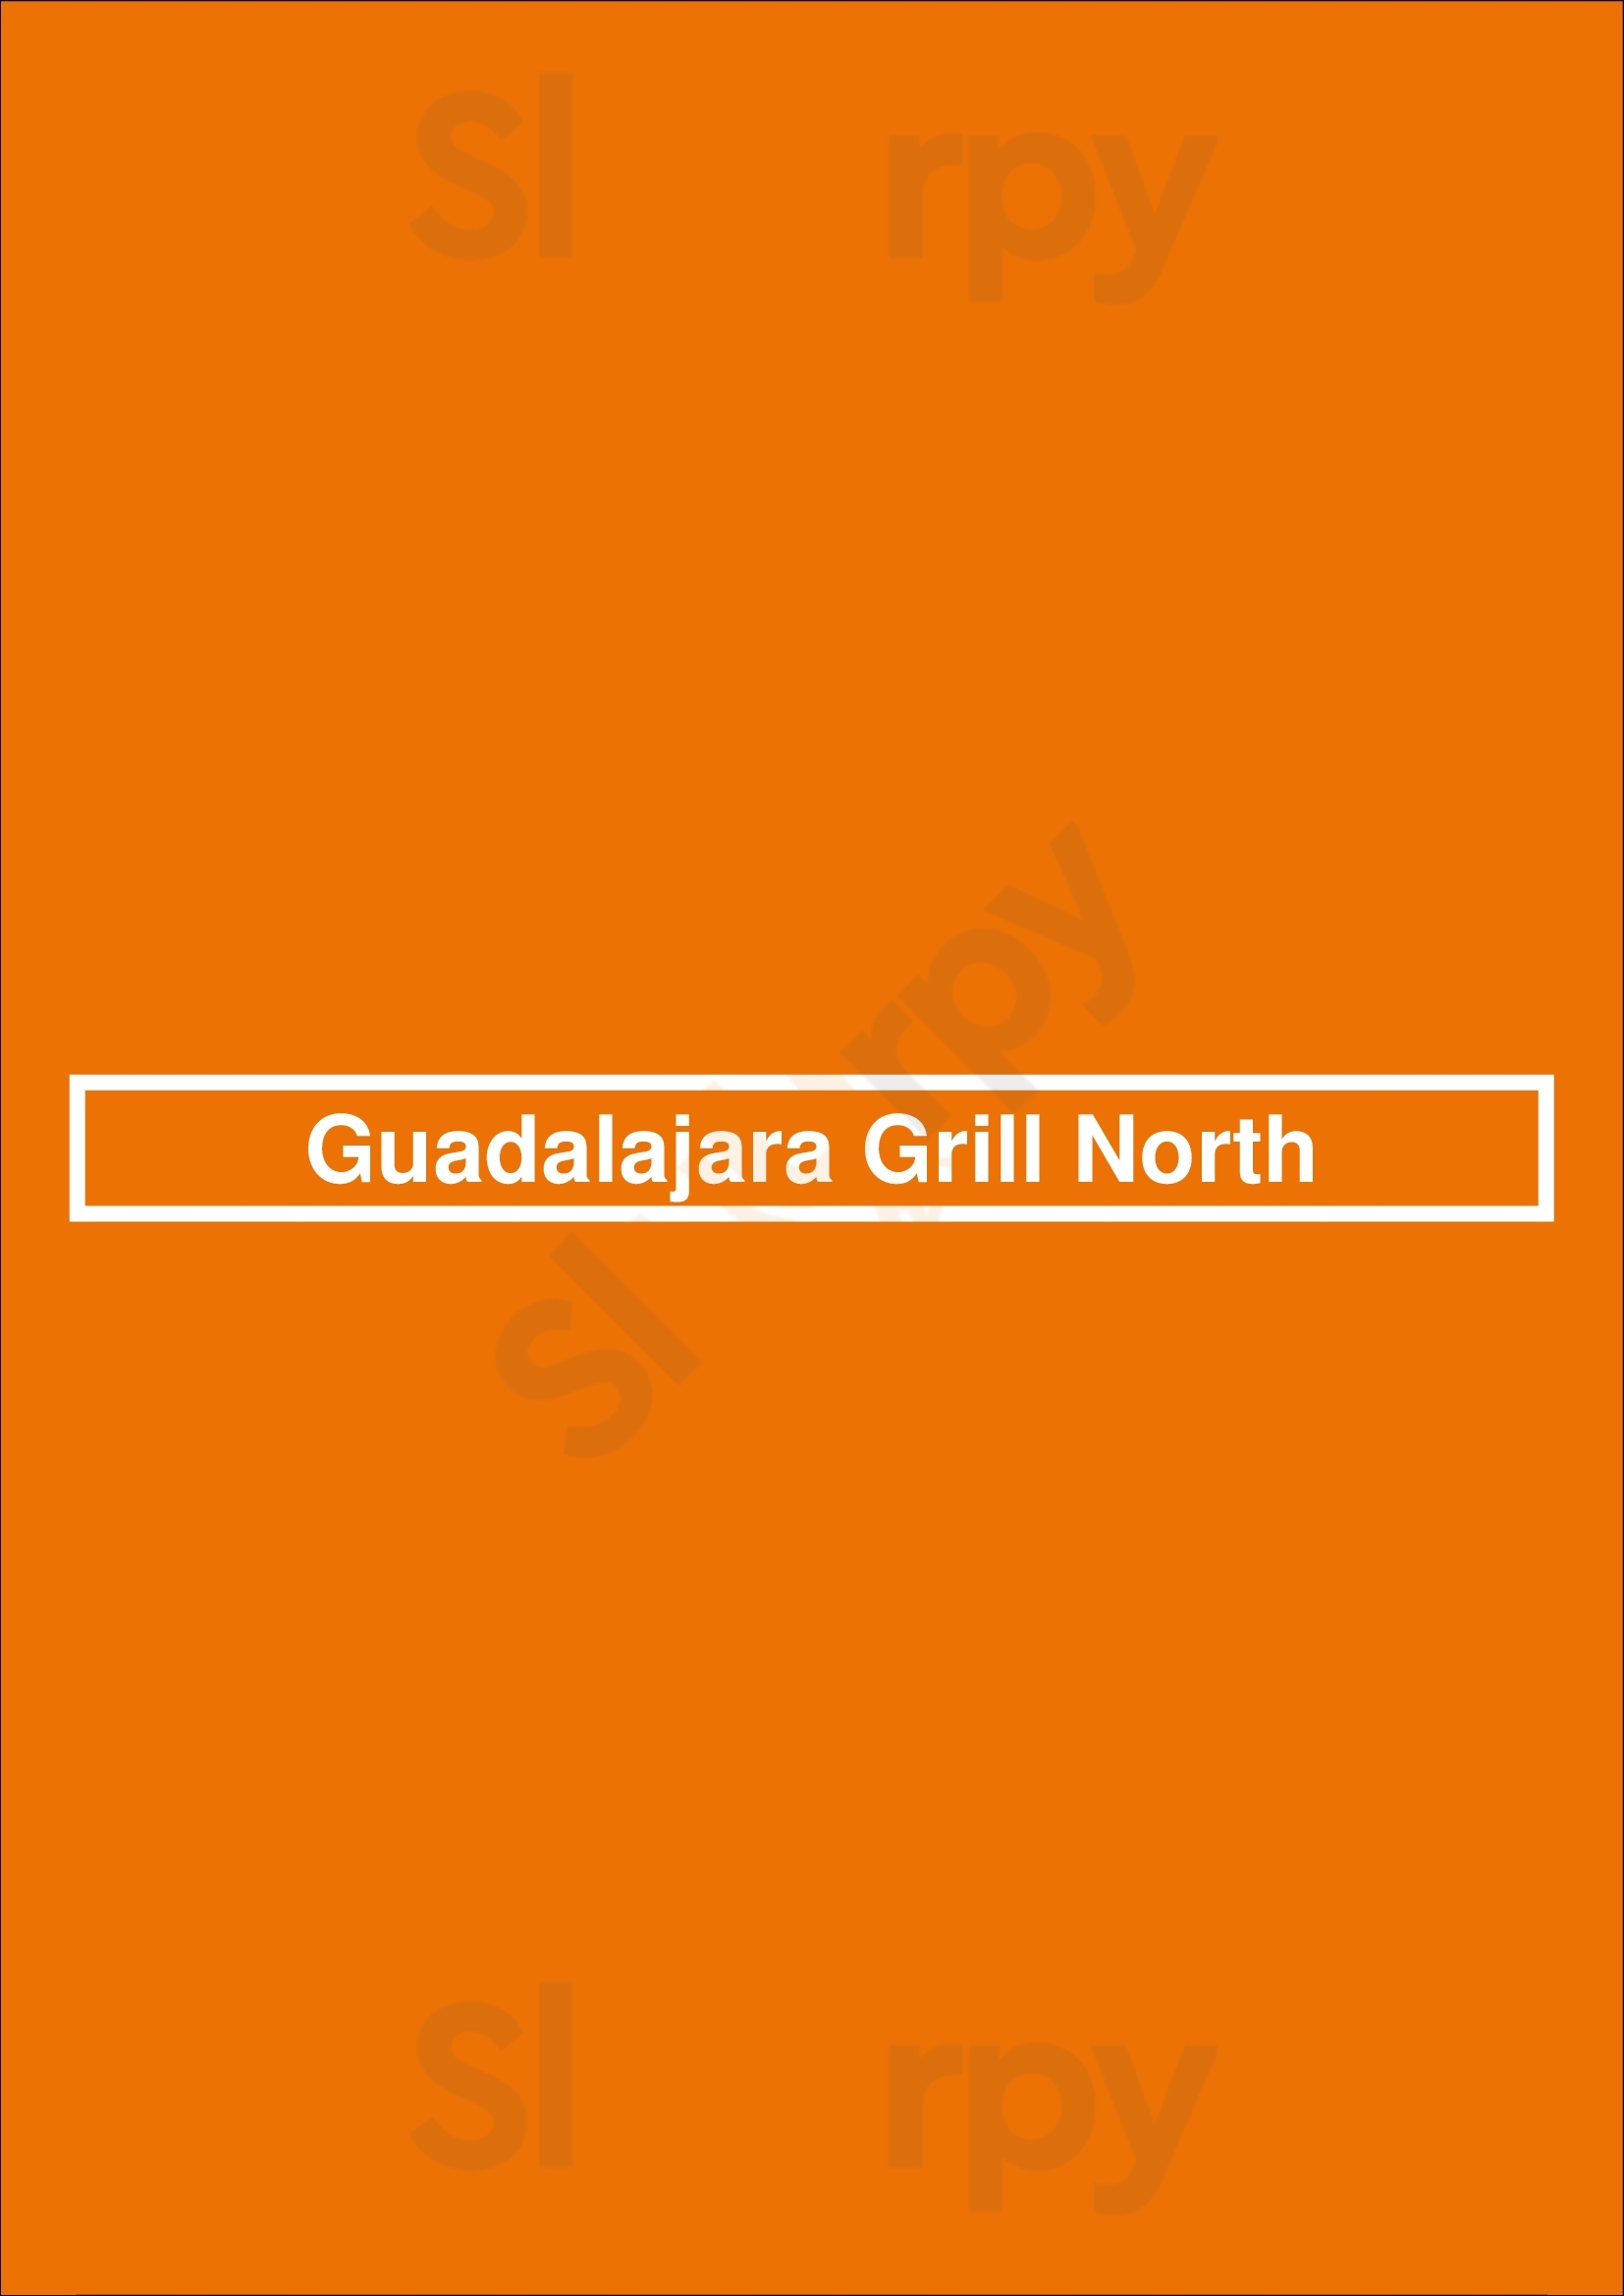 Guadalajara Grill North Tucson Menu - 1